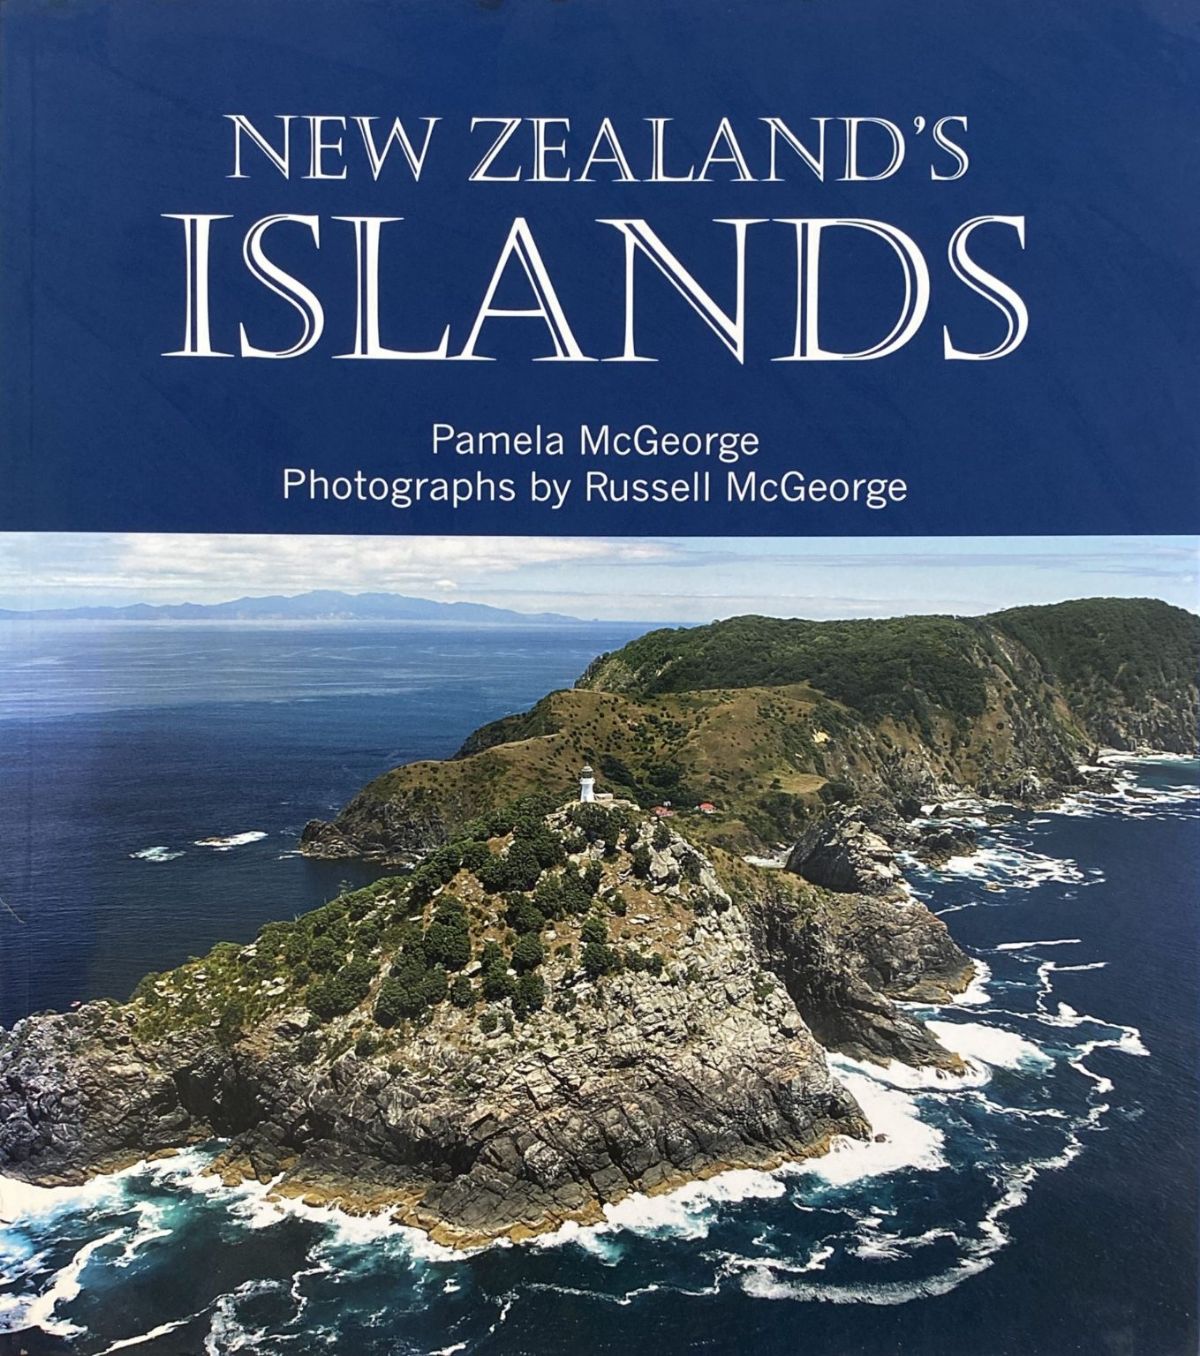 NEW ZEALAND'S ISLANDS